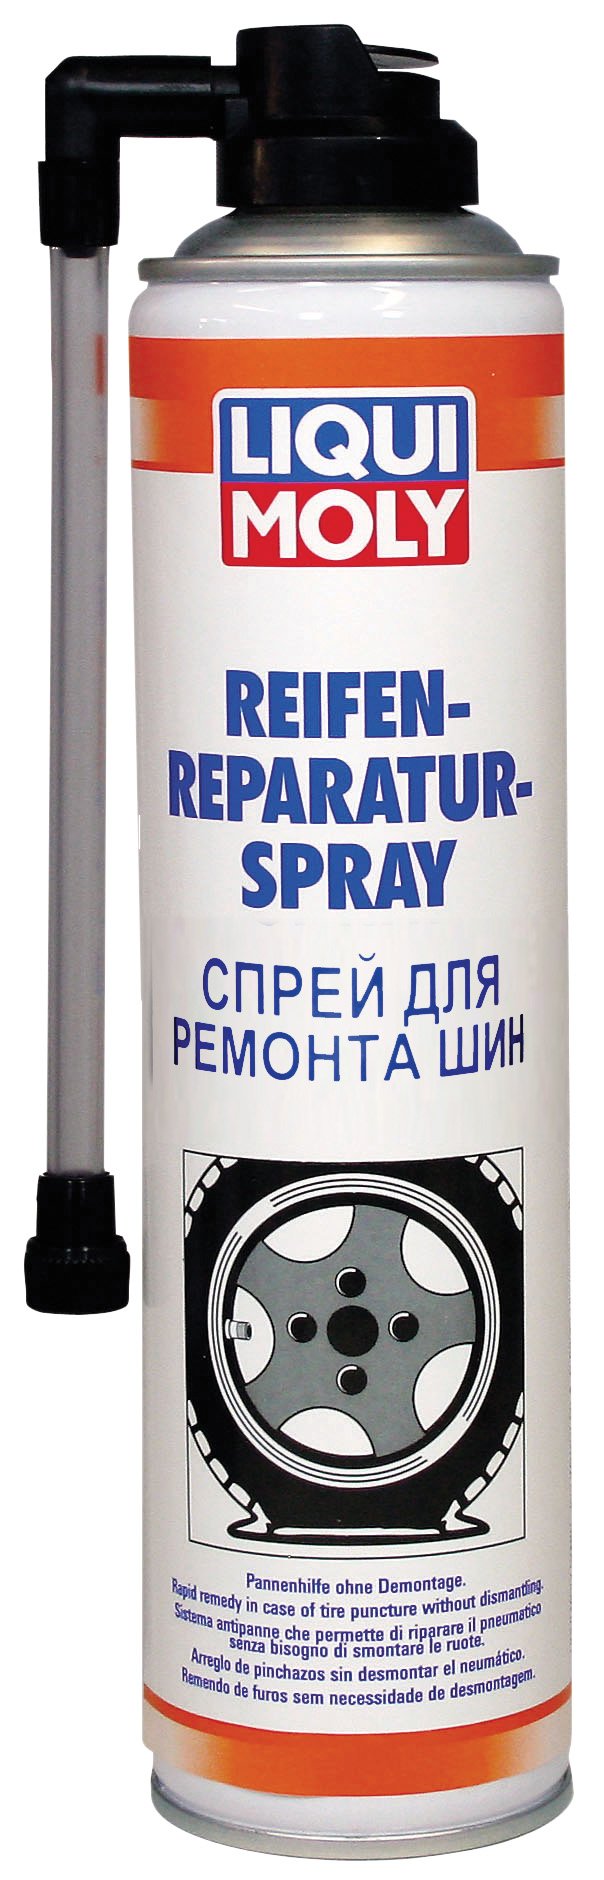 Reifen-Reparatur-Spray 400 мл